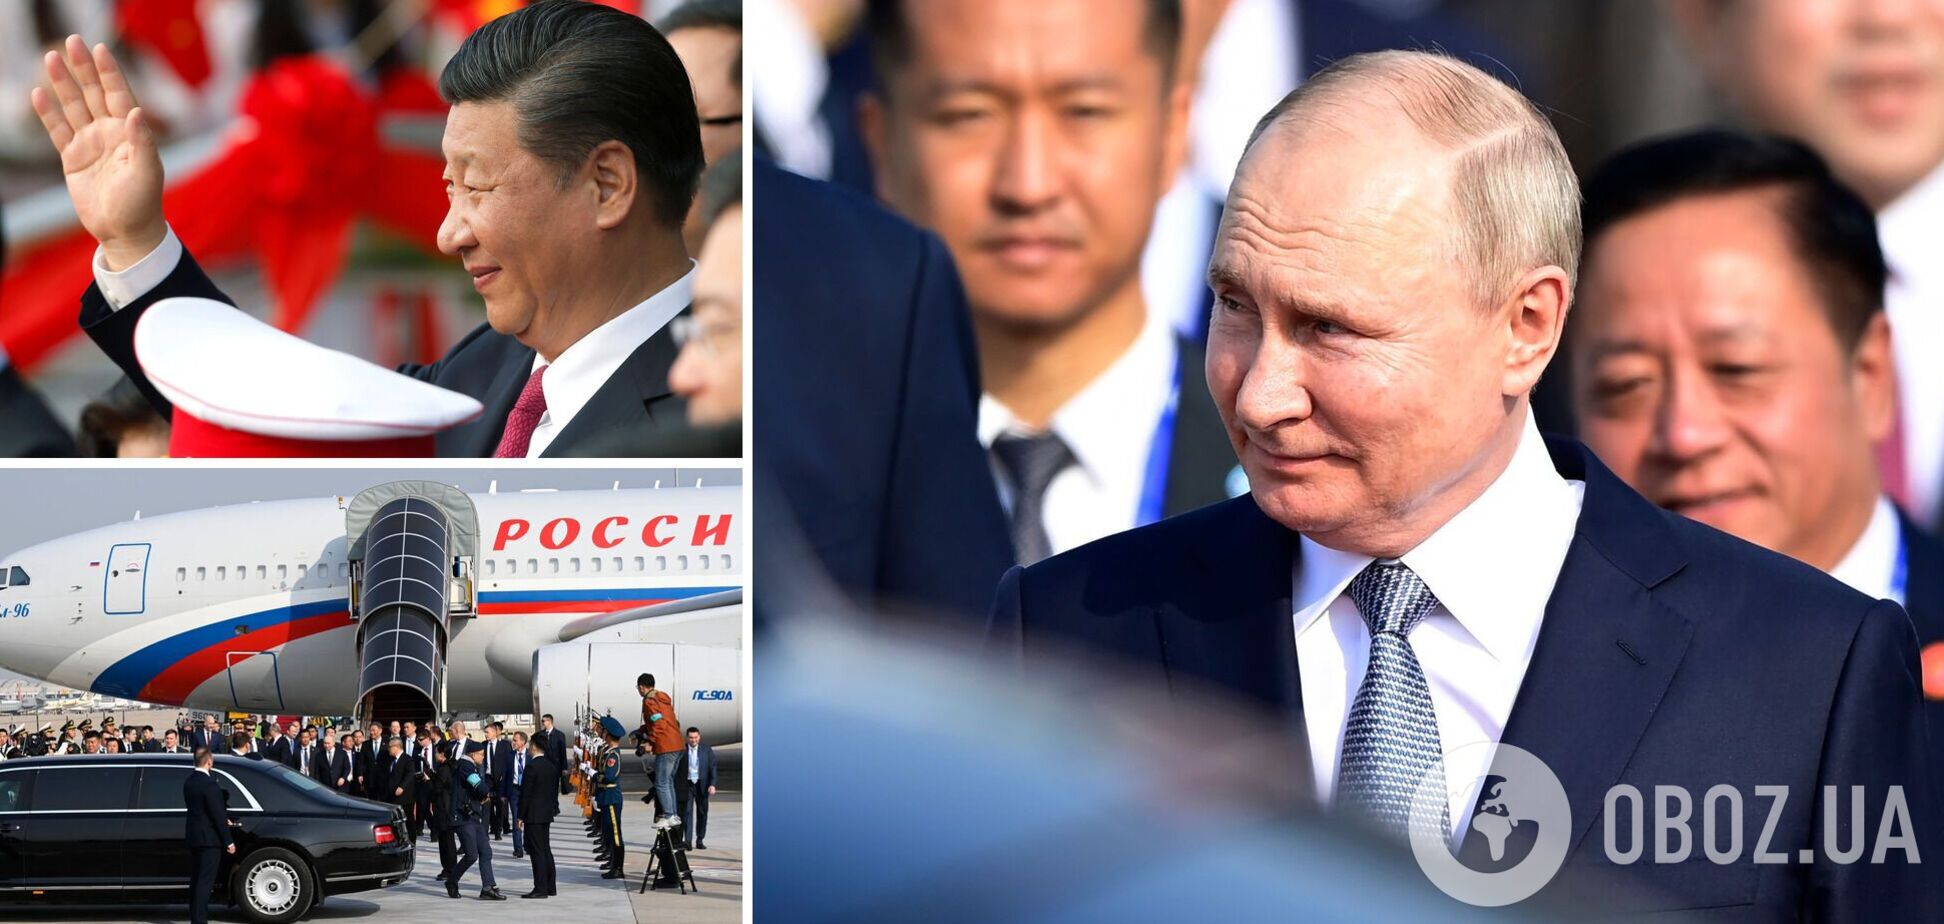 Россия должна еще больше ослабеть, что отвечает национальным интересам Китая, который просто ее использует в своих целях: интервью с дипломатом Левченко